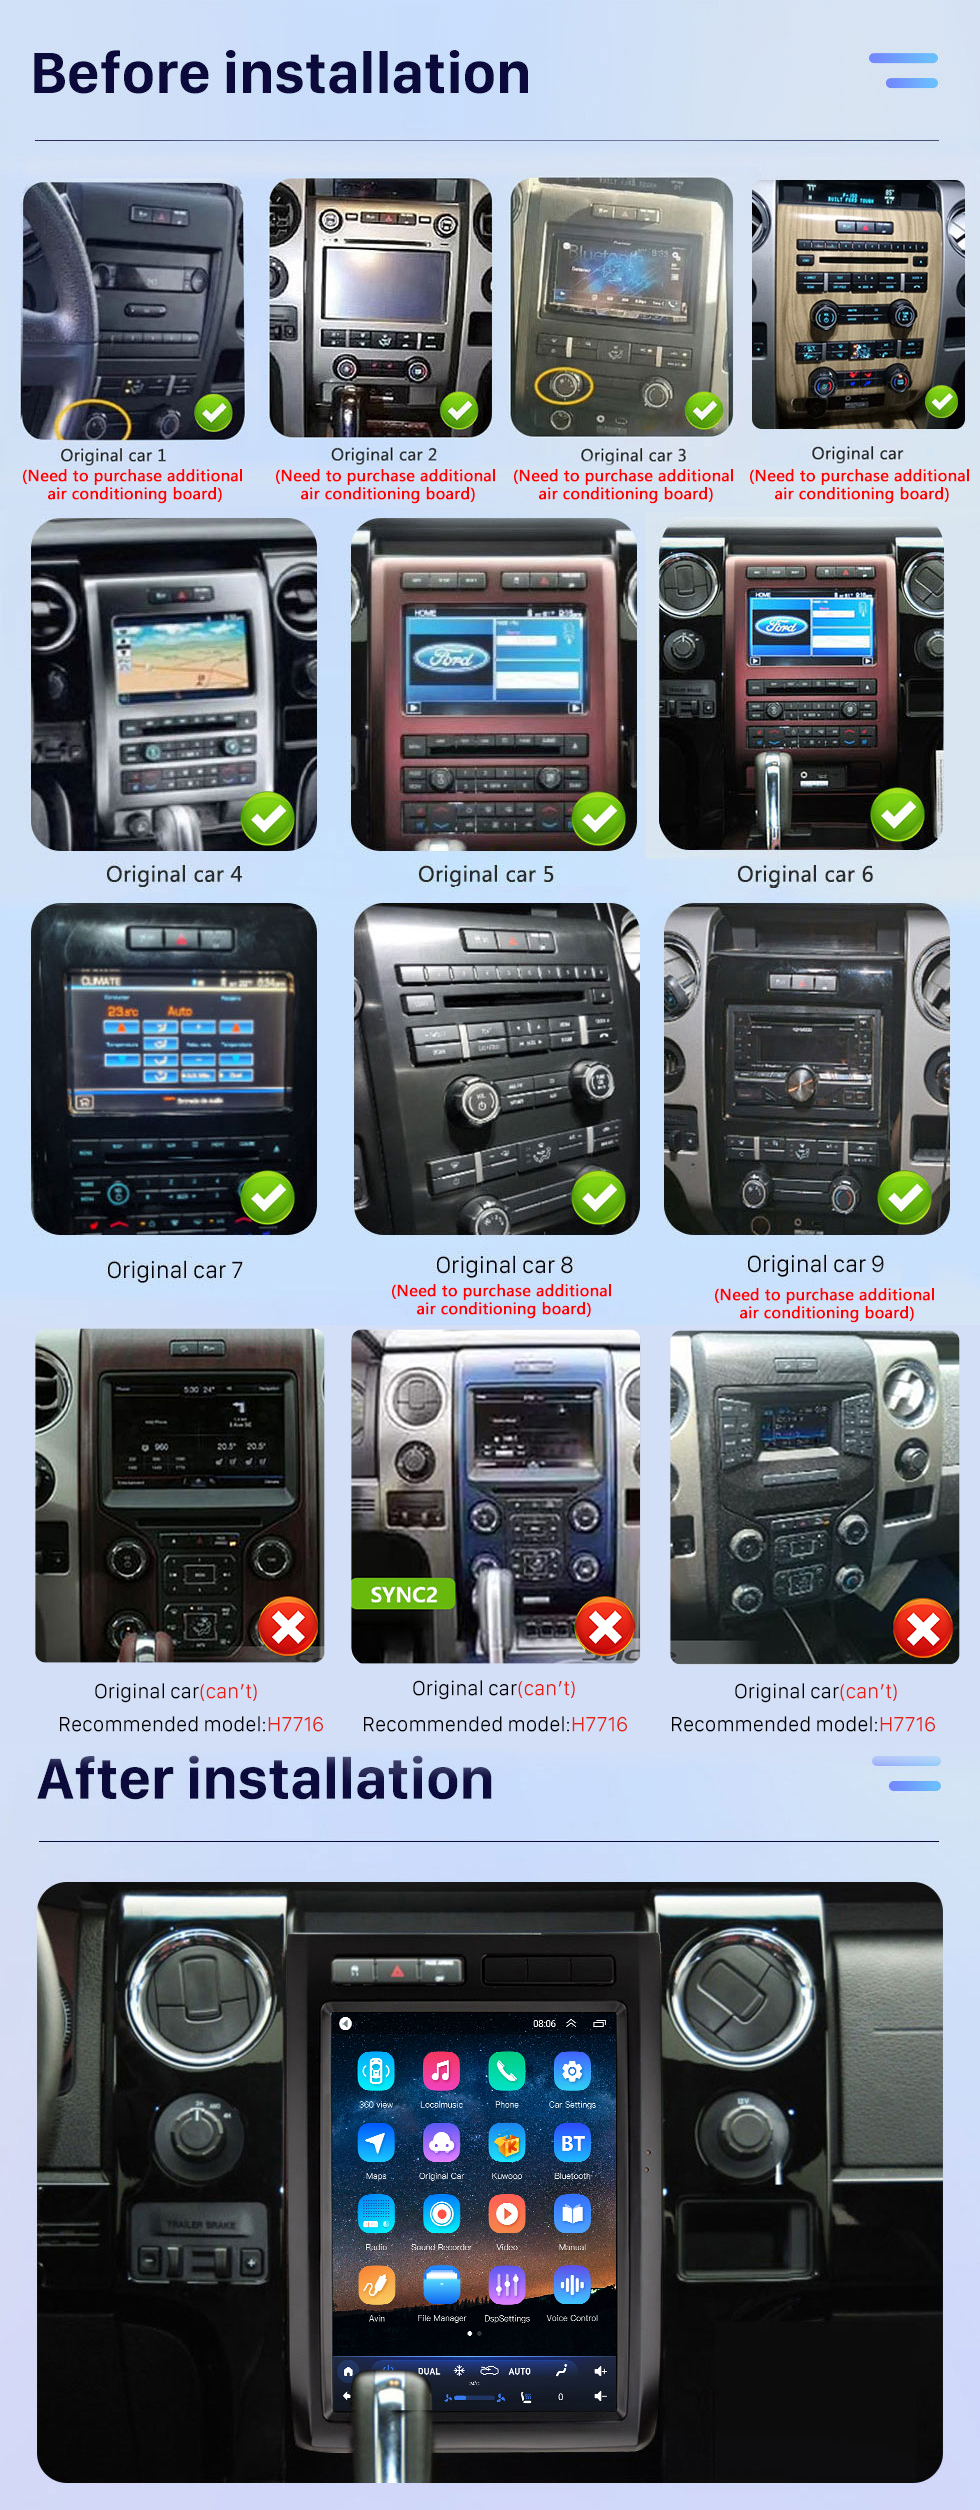 Seicane Stéréo de voiture Android 10.0 de 12,1&amp;quot; pour Ford Mustang F150 2008-2012 Carplay intégré DSP Prise en charge Bluetooth Radios FM/AM Caméra de voiture externe Commande au volant